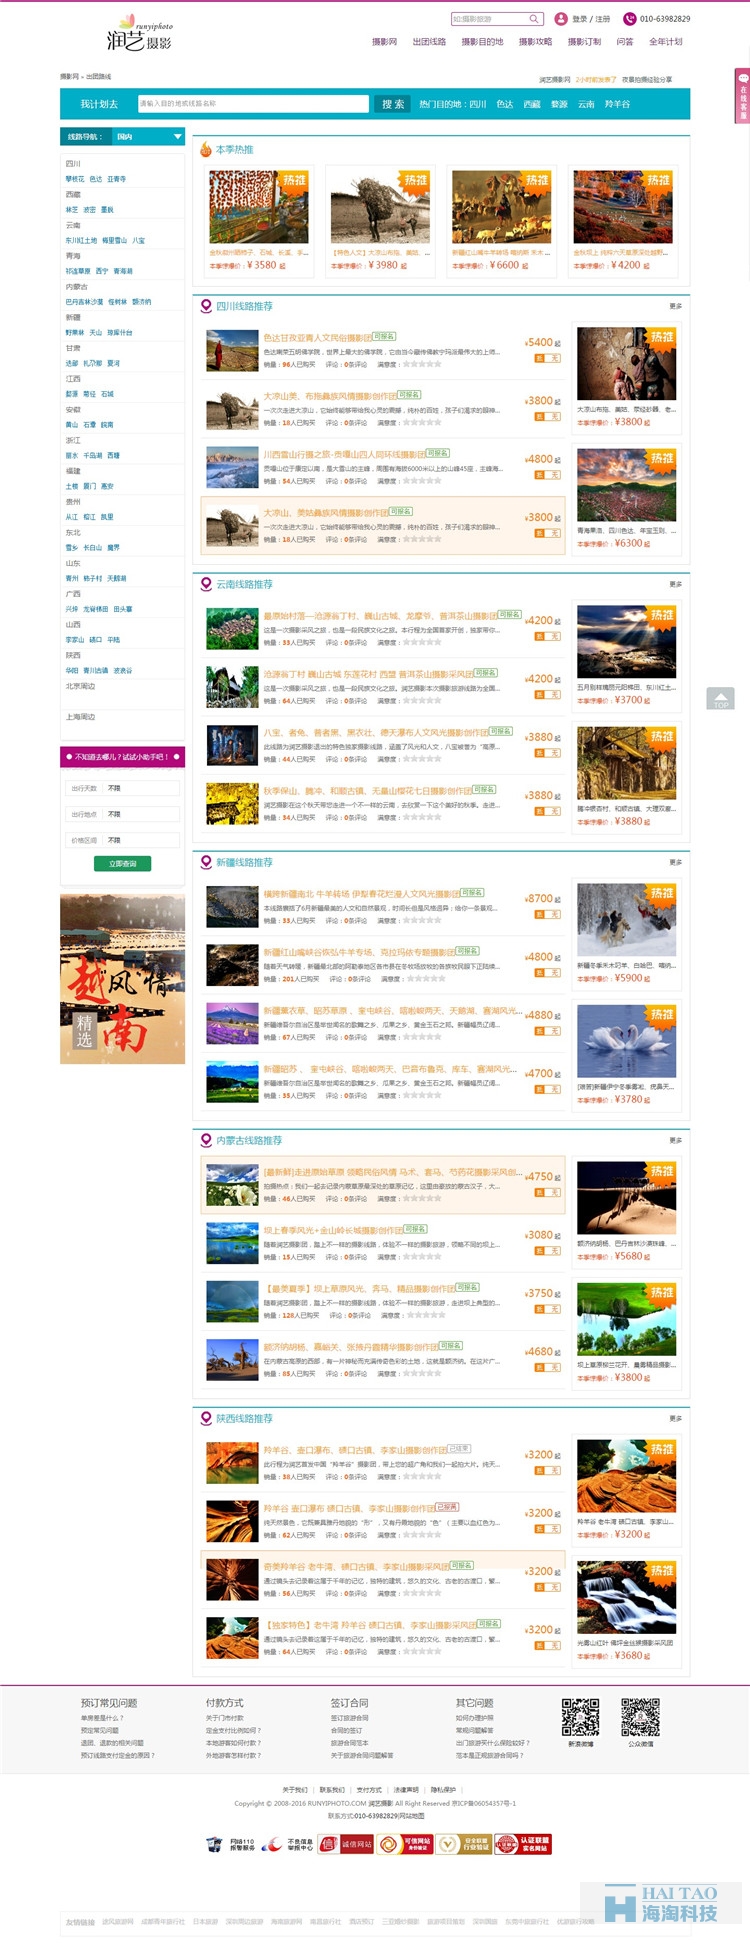 润艺摄影旅游行业网站建设方案,旅游网站建设设计,上海旅游资讯网建设方案